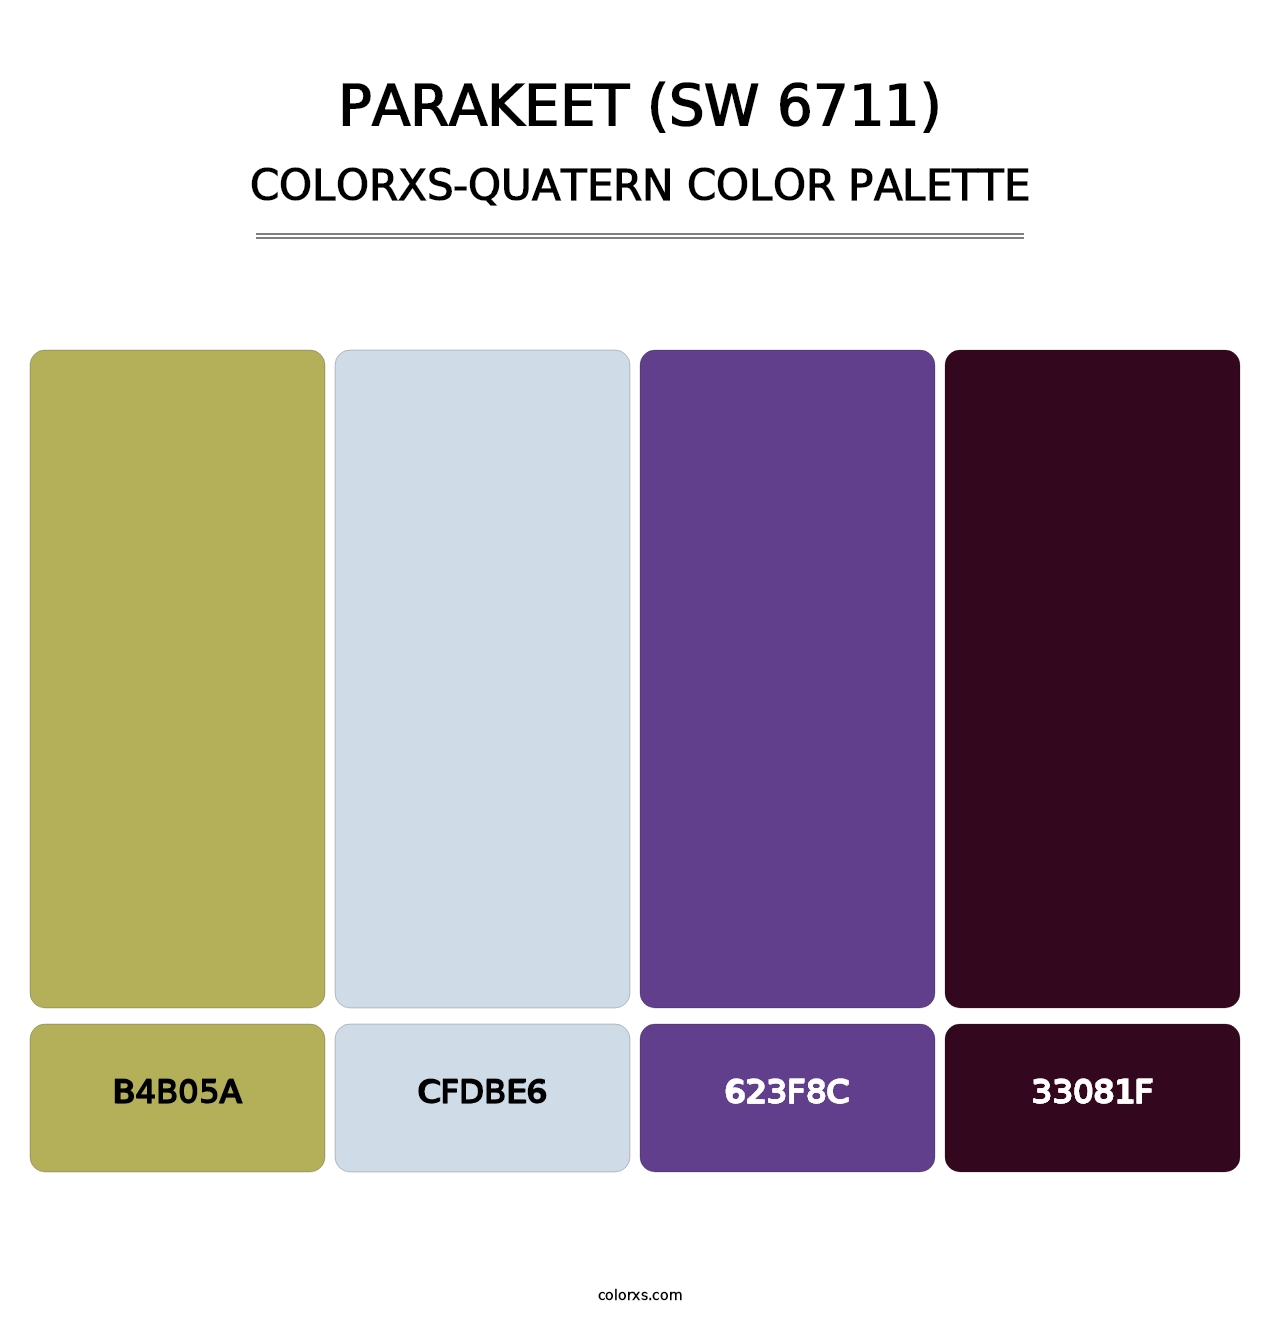 Parakeet (SW 6711) - Colorxs Quatern Palette